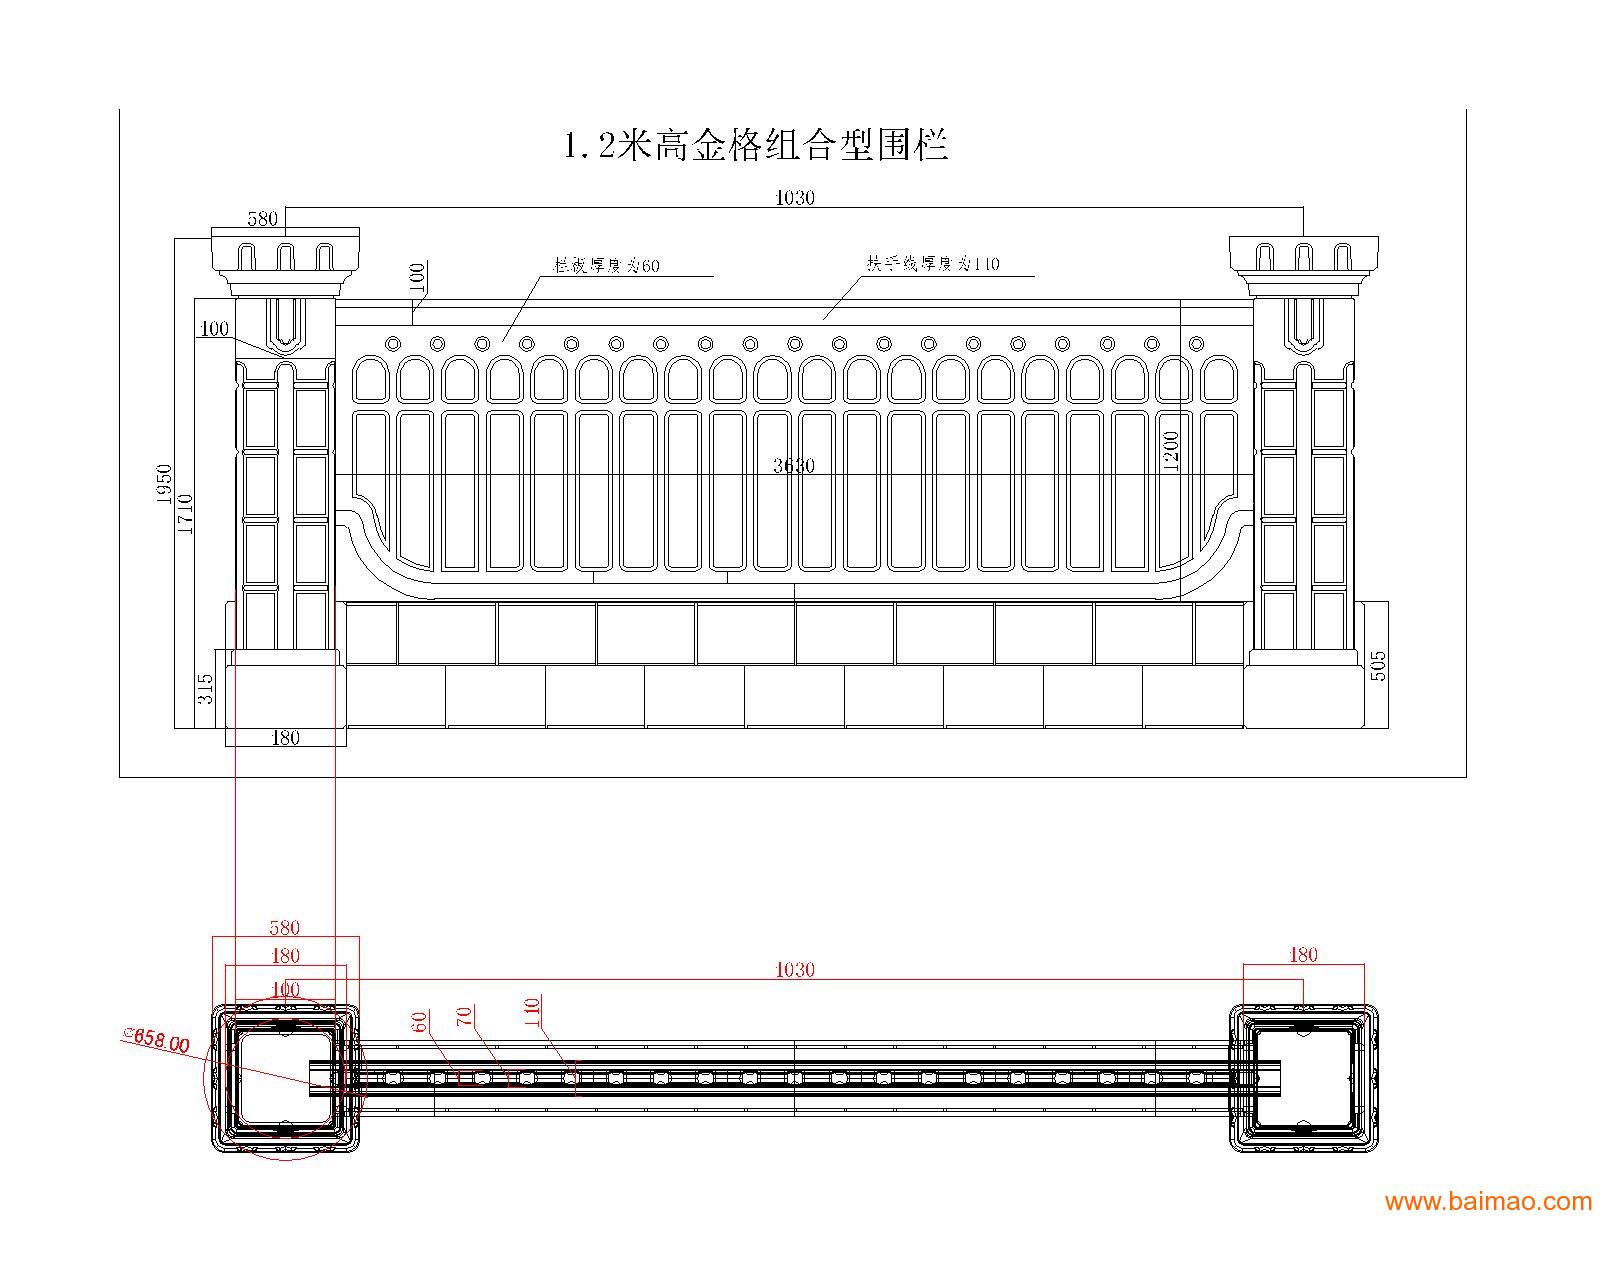 供应金格组合围栏模具 水泥产品 水泥栏杆 郑州天艺